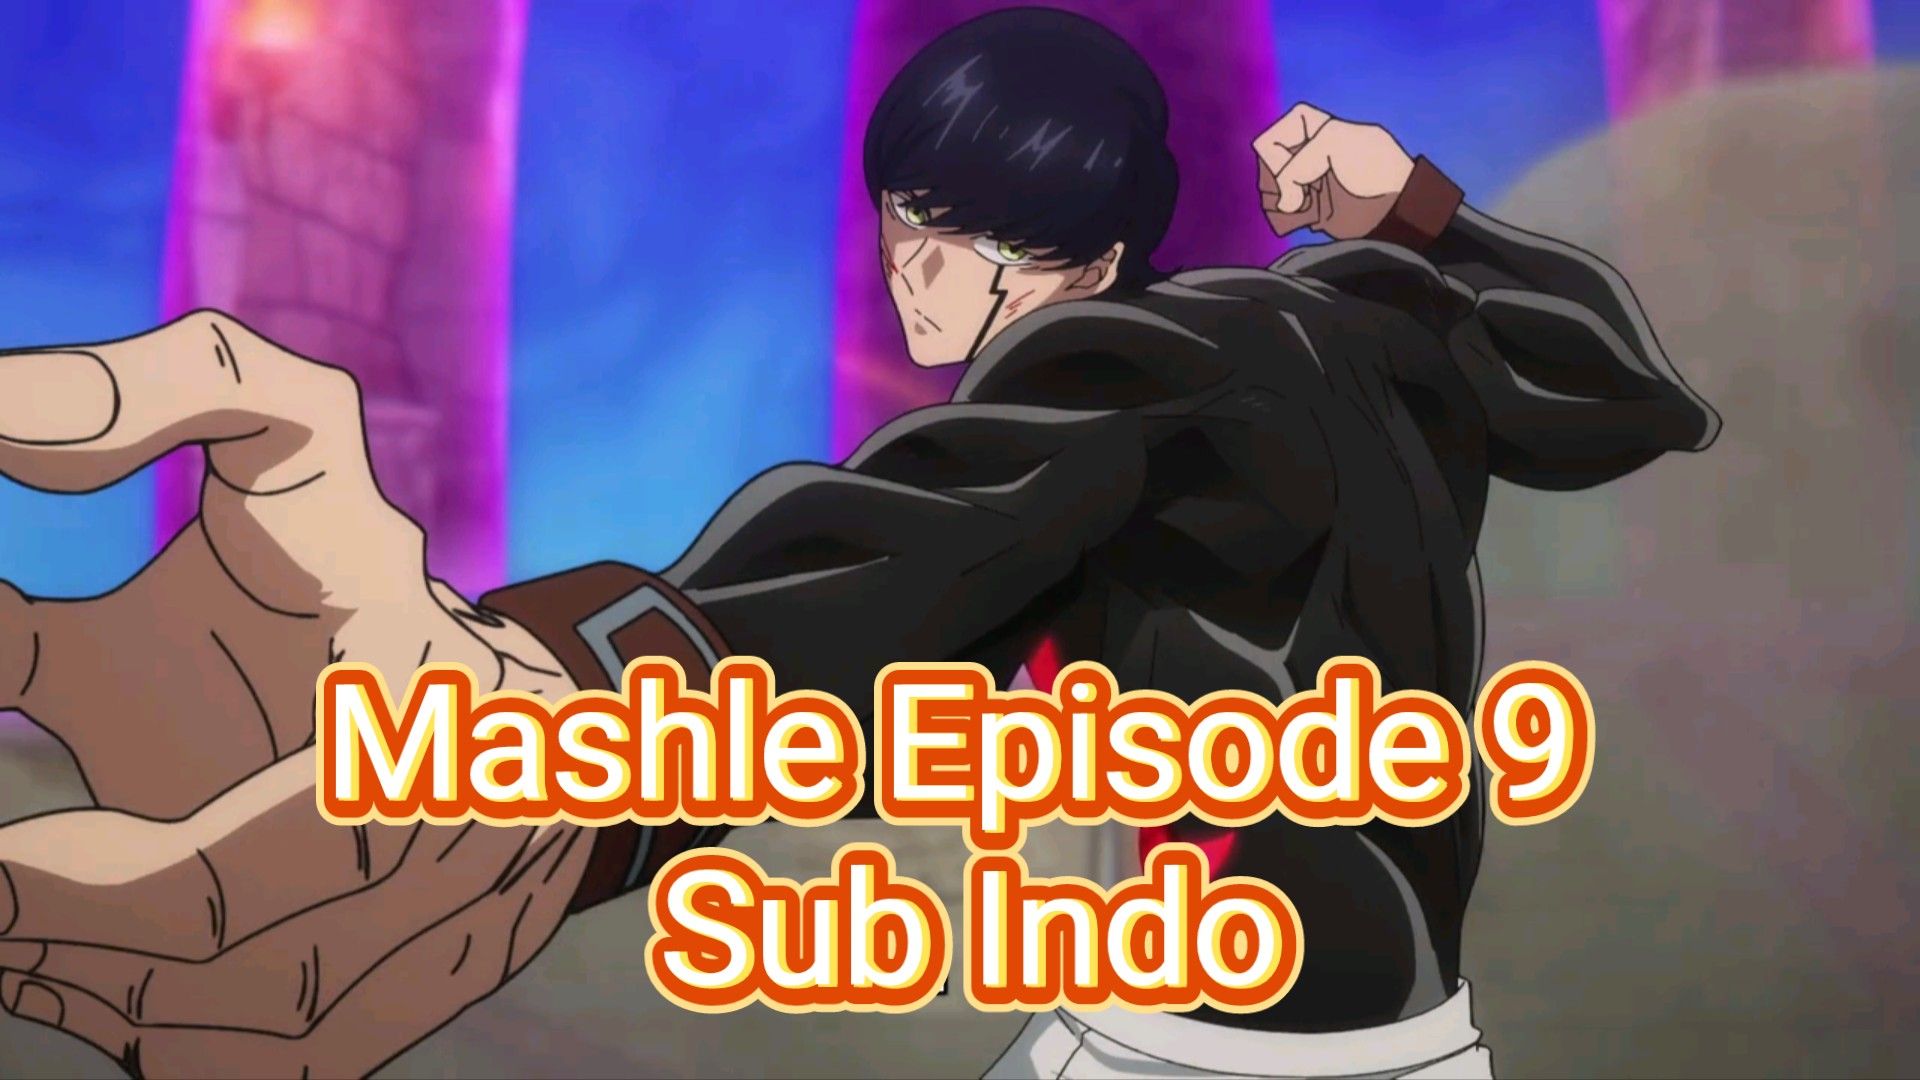 Mashle Episode 1 Sub Indo - BiliBili